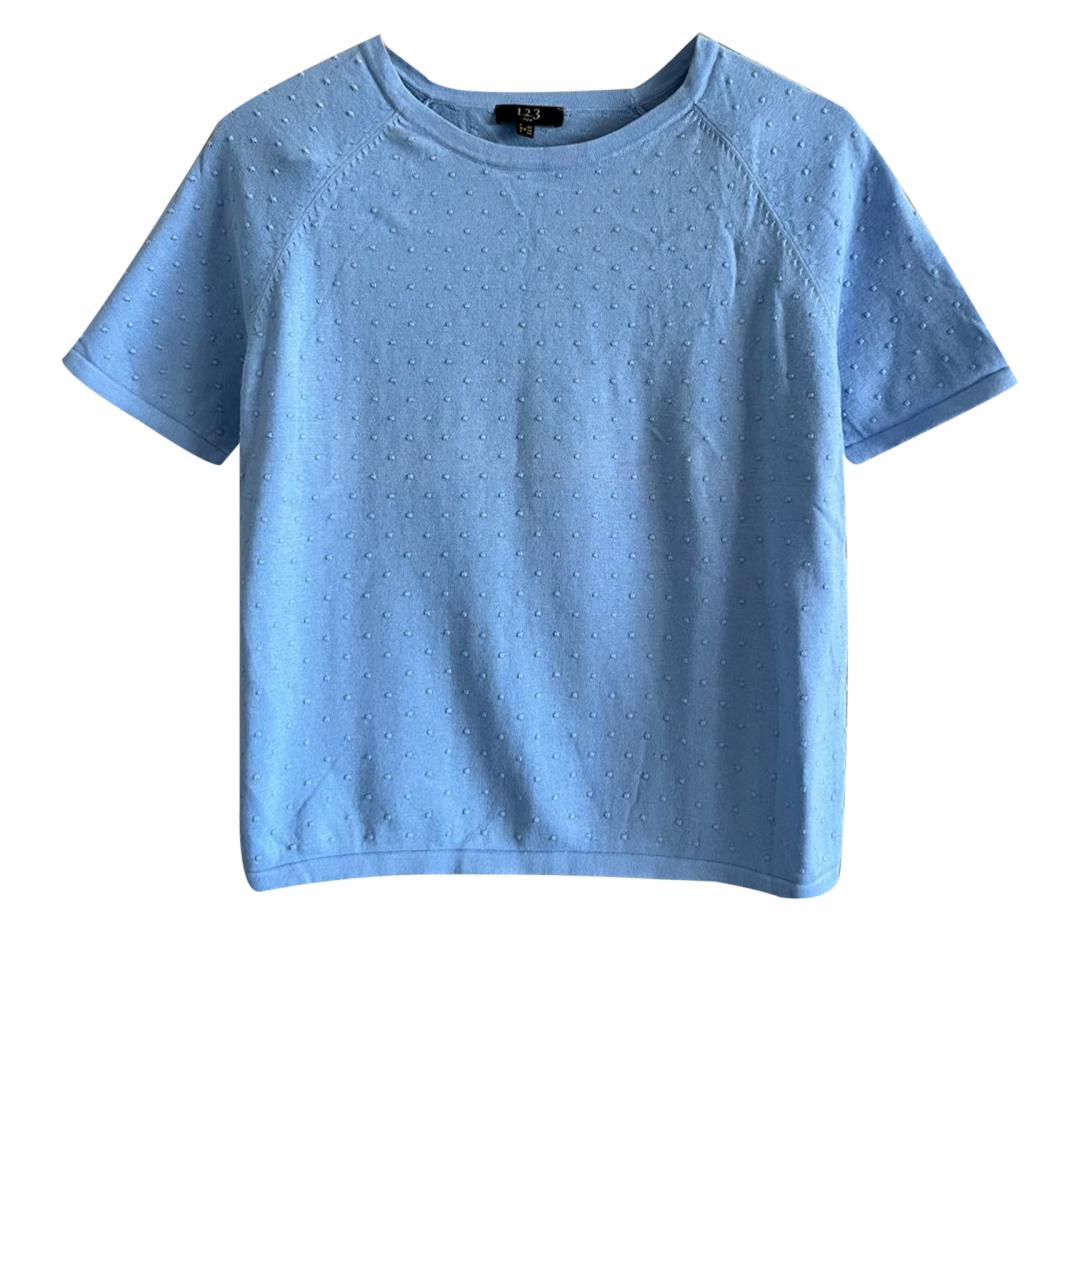 123 Голубой хлопковый джемпер / свитер, фото 1